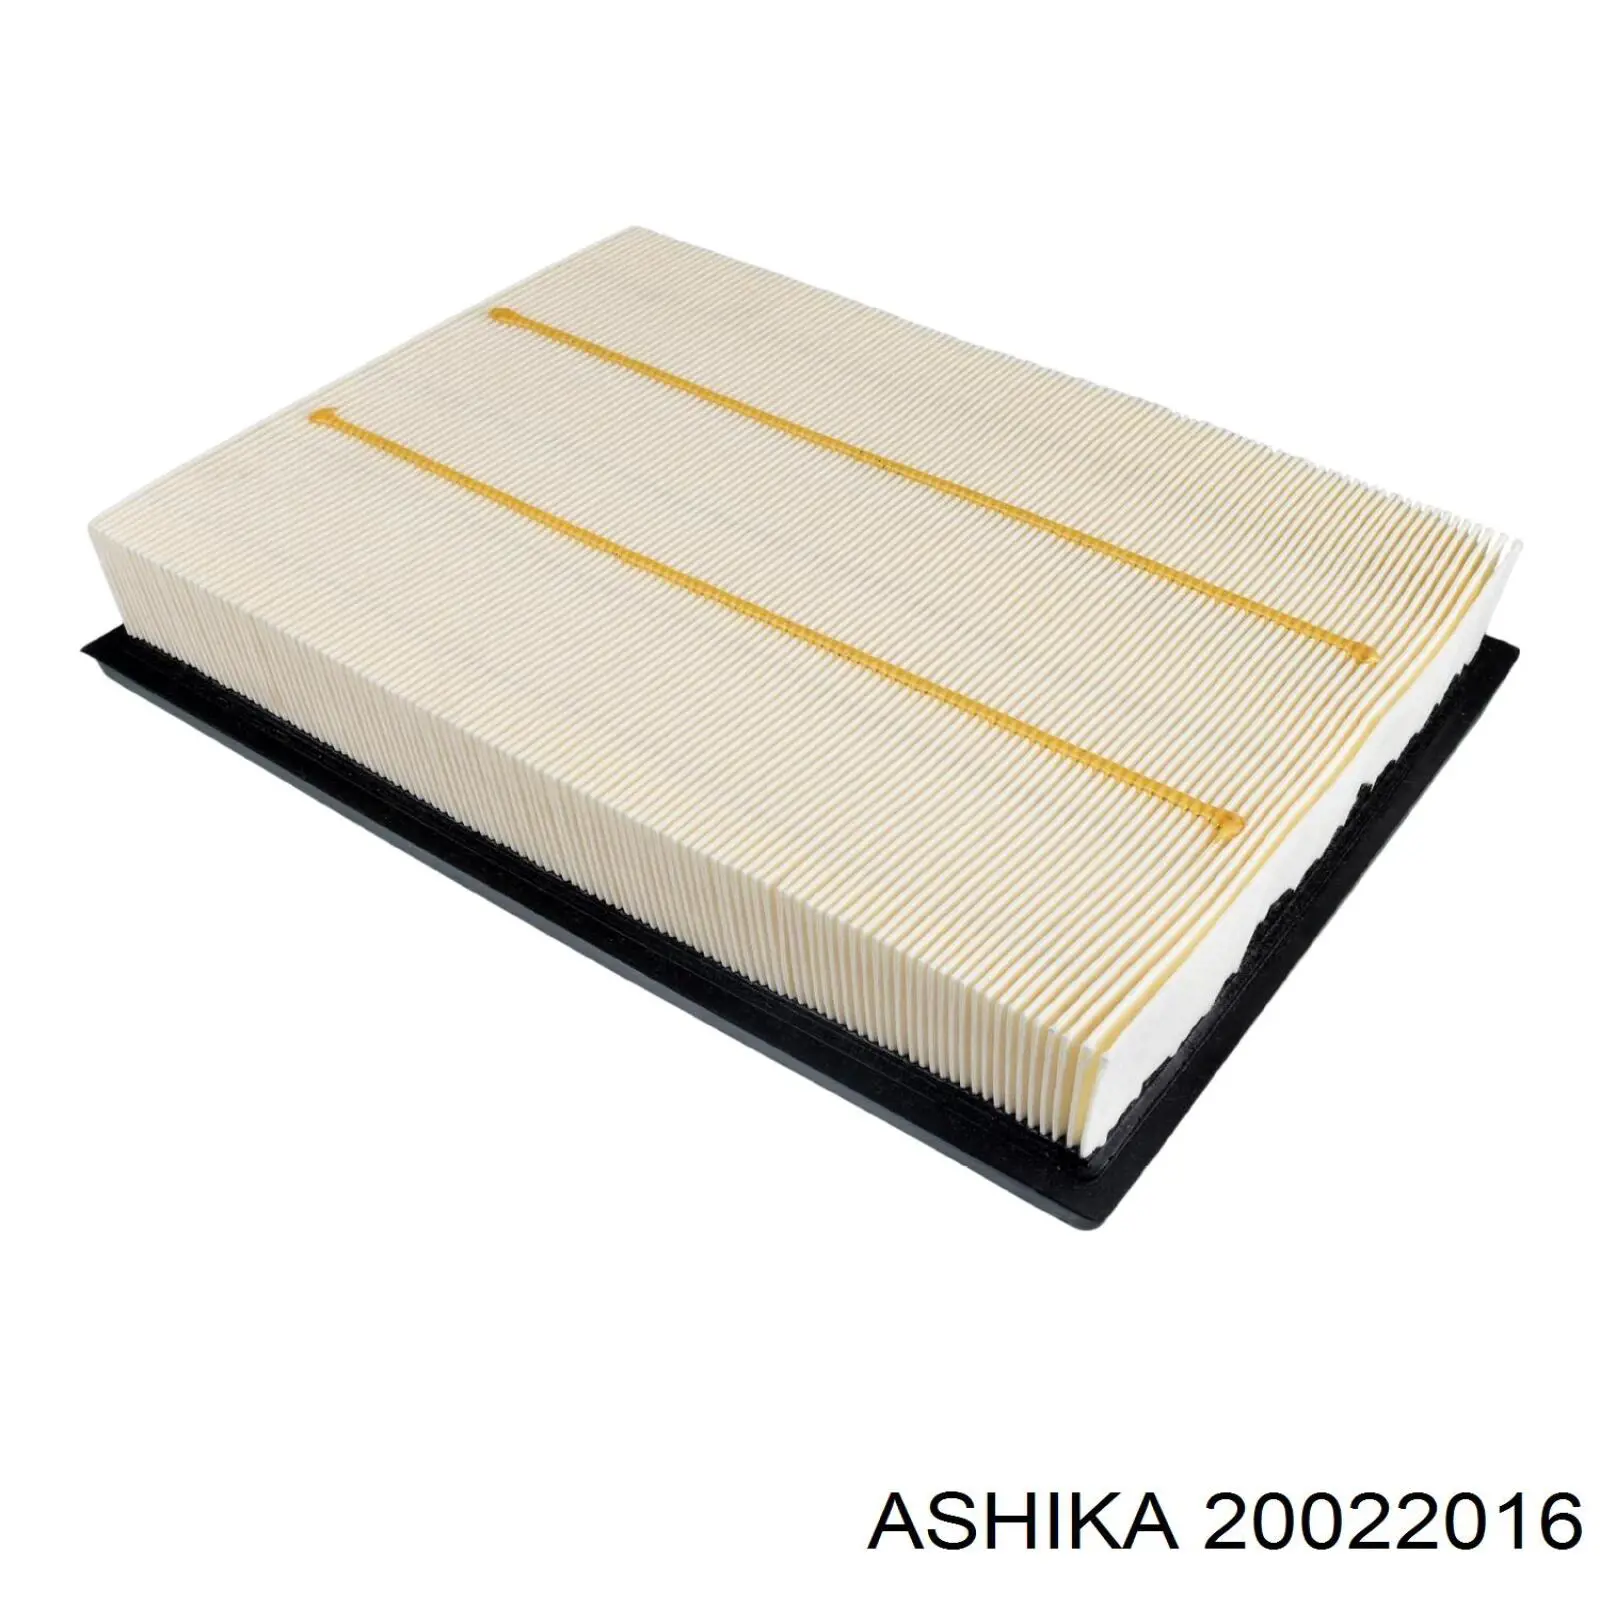 20022016 Ashika filtro de aire